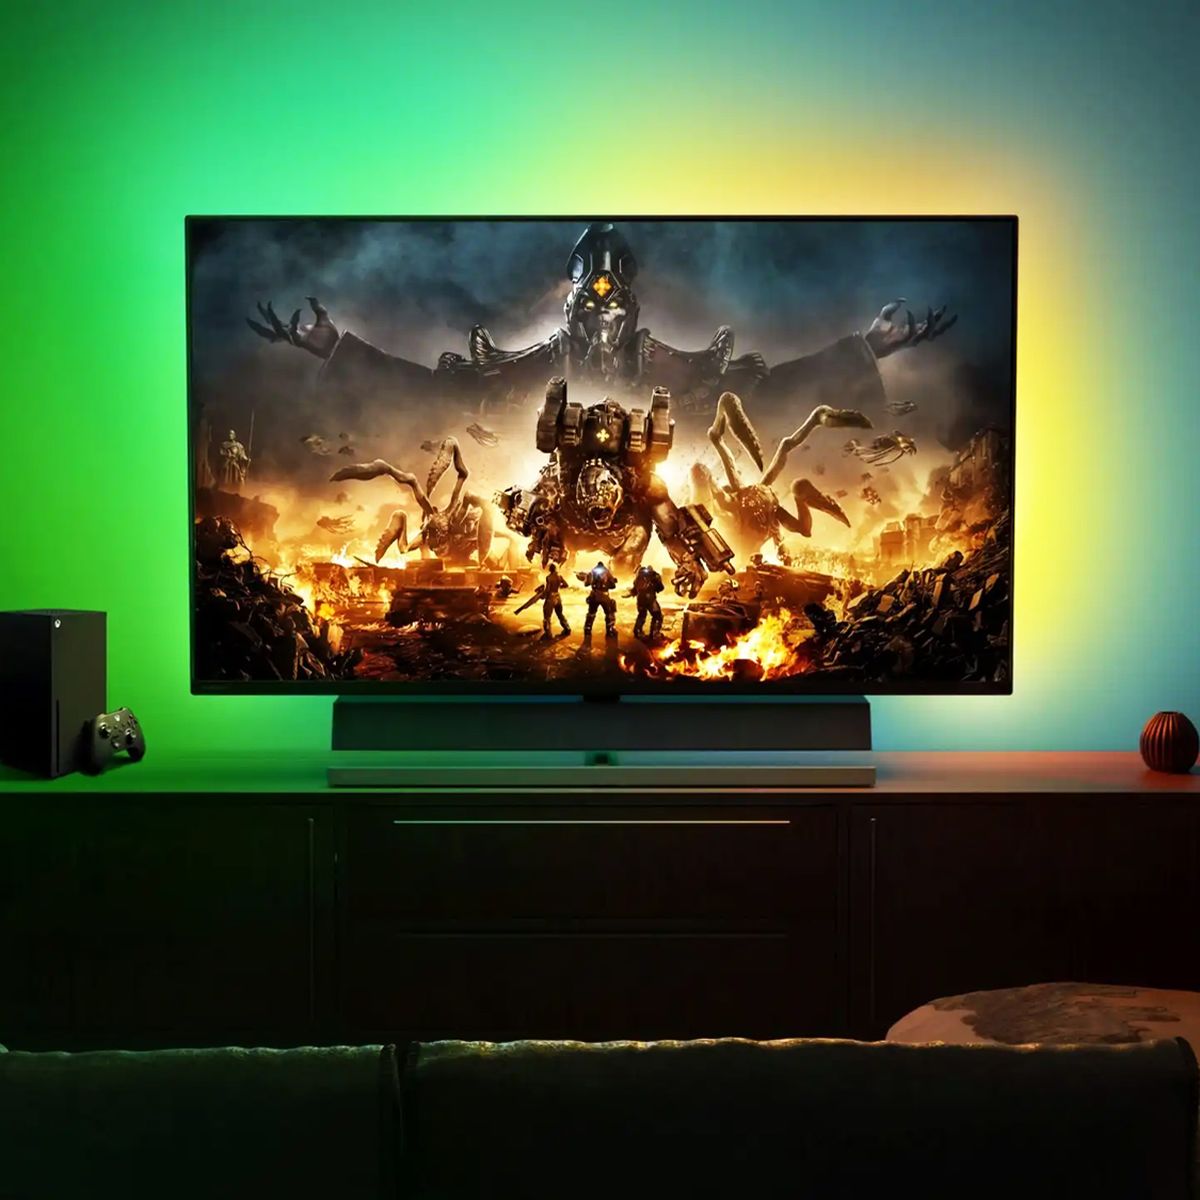 Smart TV con 120 Hz: mejores modelos con precio barato